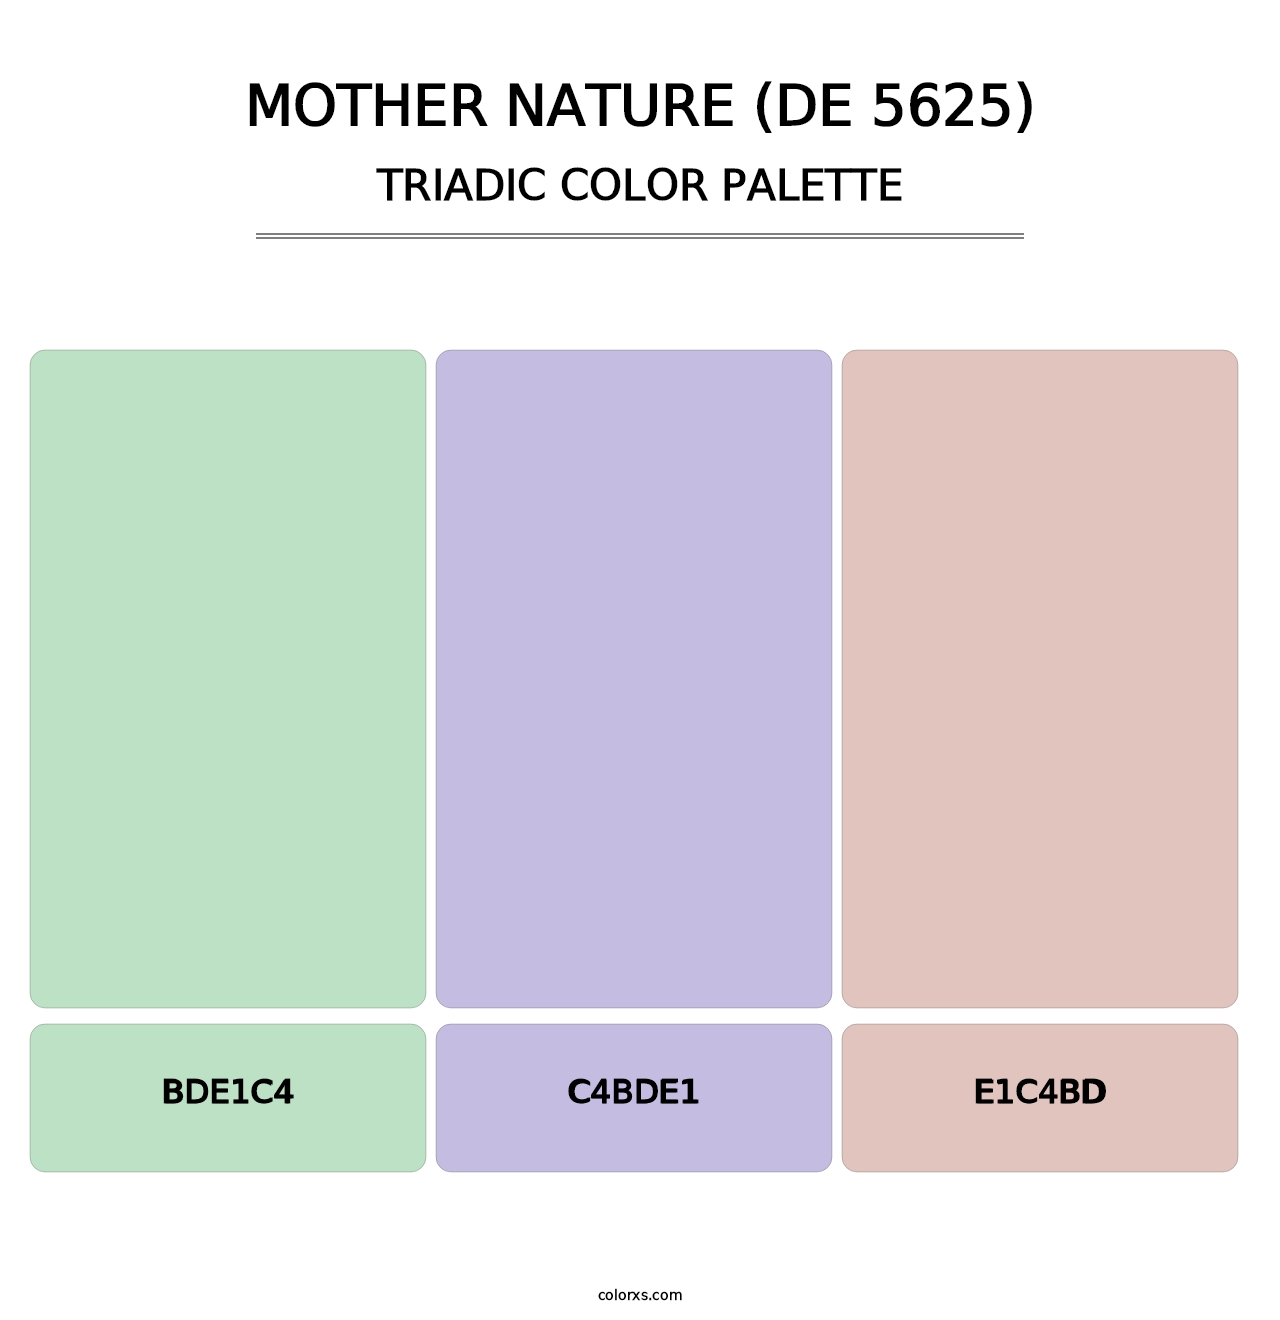 Mother Nature (DE 5625) - Triadic Color Palette